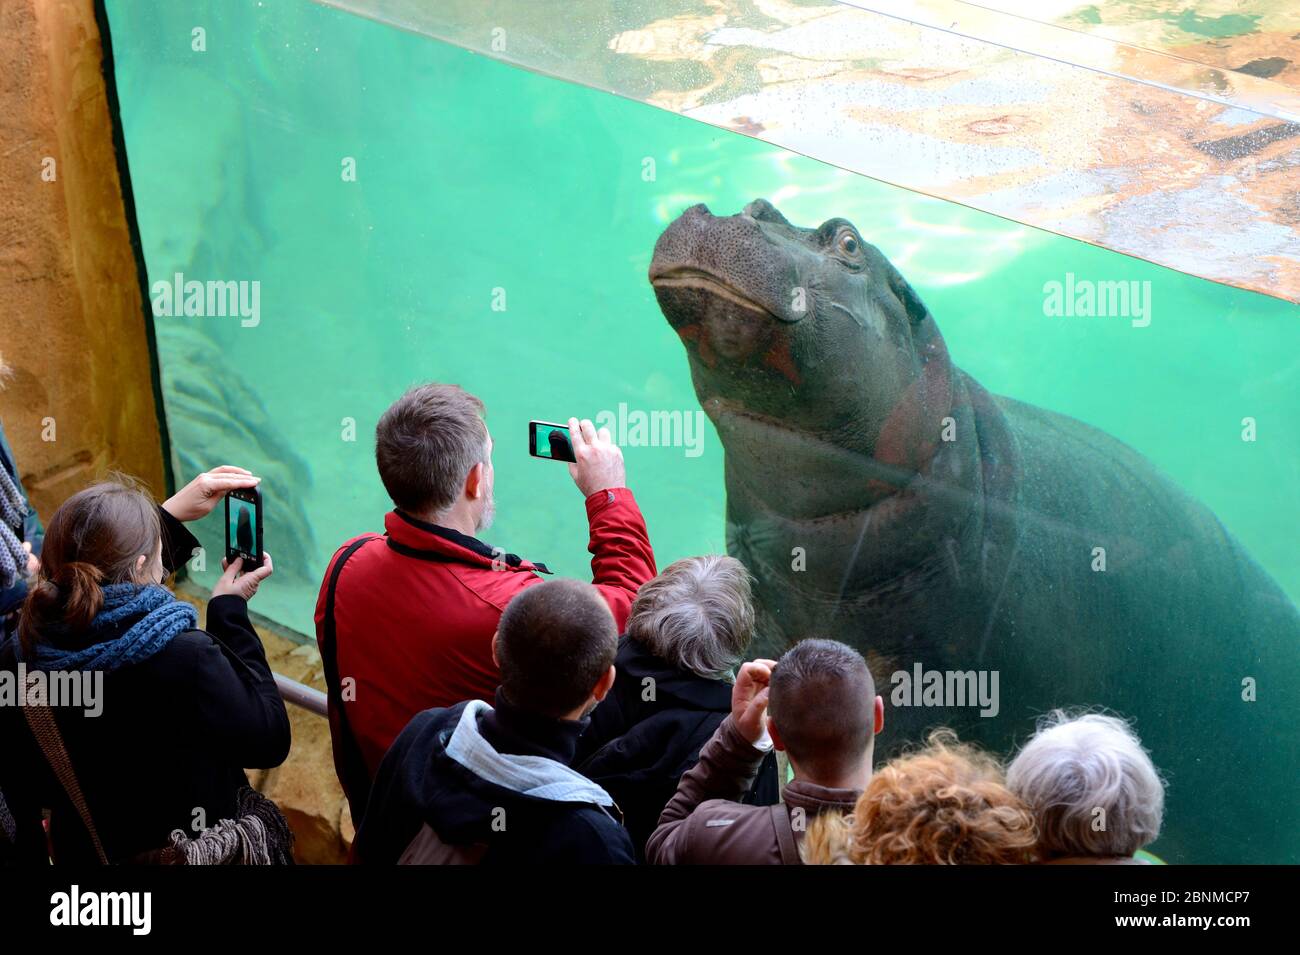 Visitatori che guardano una femmina Hippopotamus (Hippopotamus anfibio) attraverso una finestra serbatoio, prigioniero nello Zoo Parc de Beauval, Francia. Si verifica nel sub-Sahara Foto Stock